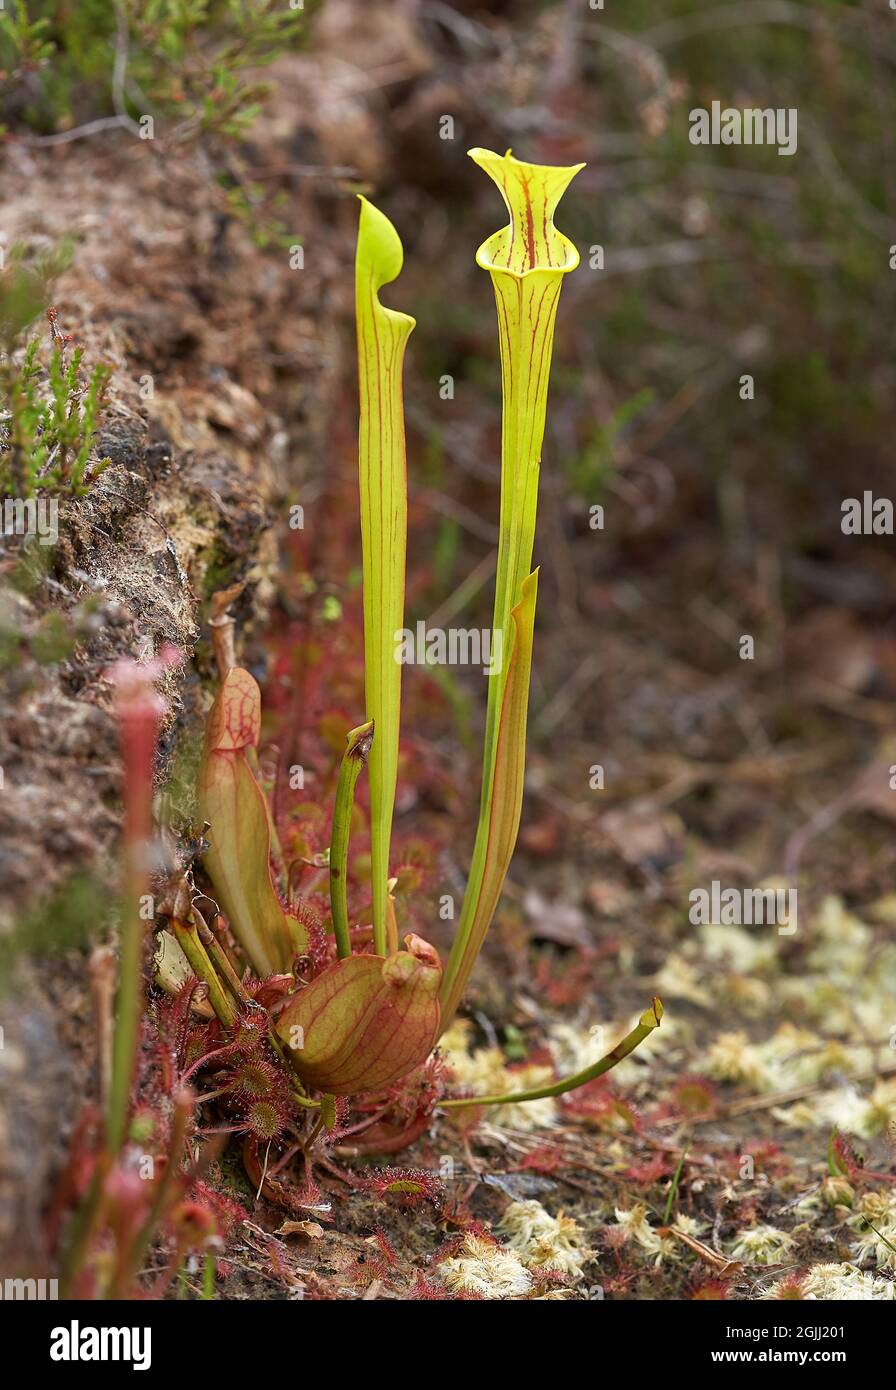 Fleurs insectivores de la plante de Pitcher jaune Sarracenia flava croissant avec le Sundew à feuilles rondes dans d'anciens excavations de tourbe aux niveaux de Somerset Royaume-Uni Banque D'Images